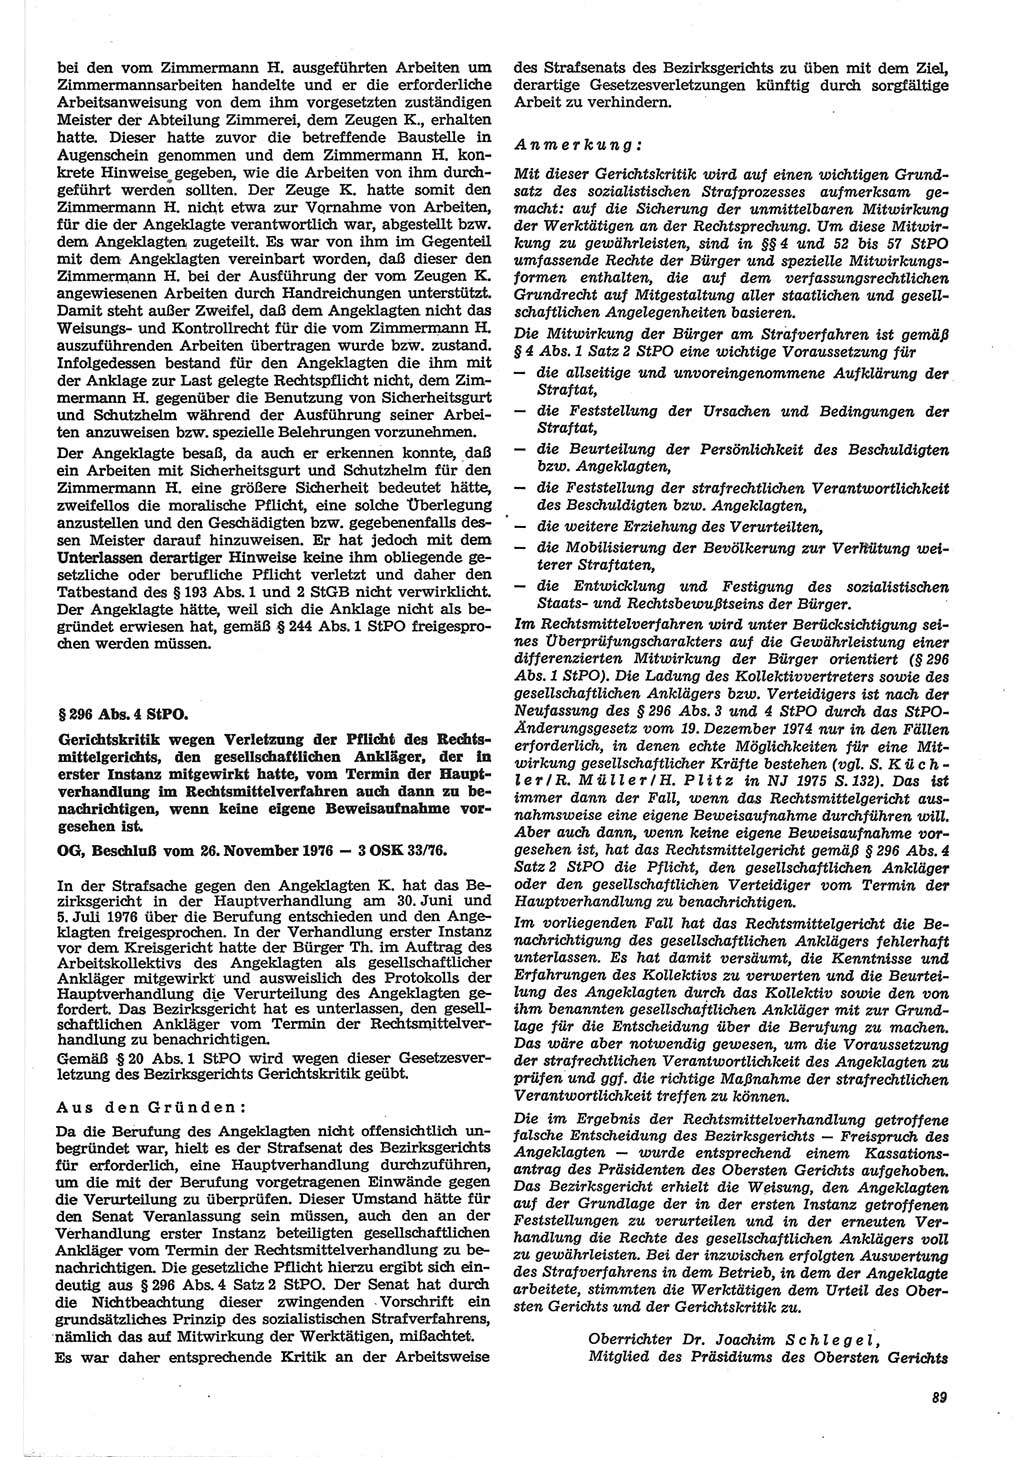 Neue Justiz (NJ), Zeitschrift für Recht und Rechtswissenschaft-Zeitschrift, sozialistisches Recht und Gesetzlichkeit, 31. Jahrgang 1977, Seite 89 (NJ DDR 1977, S. 89)